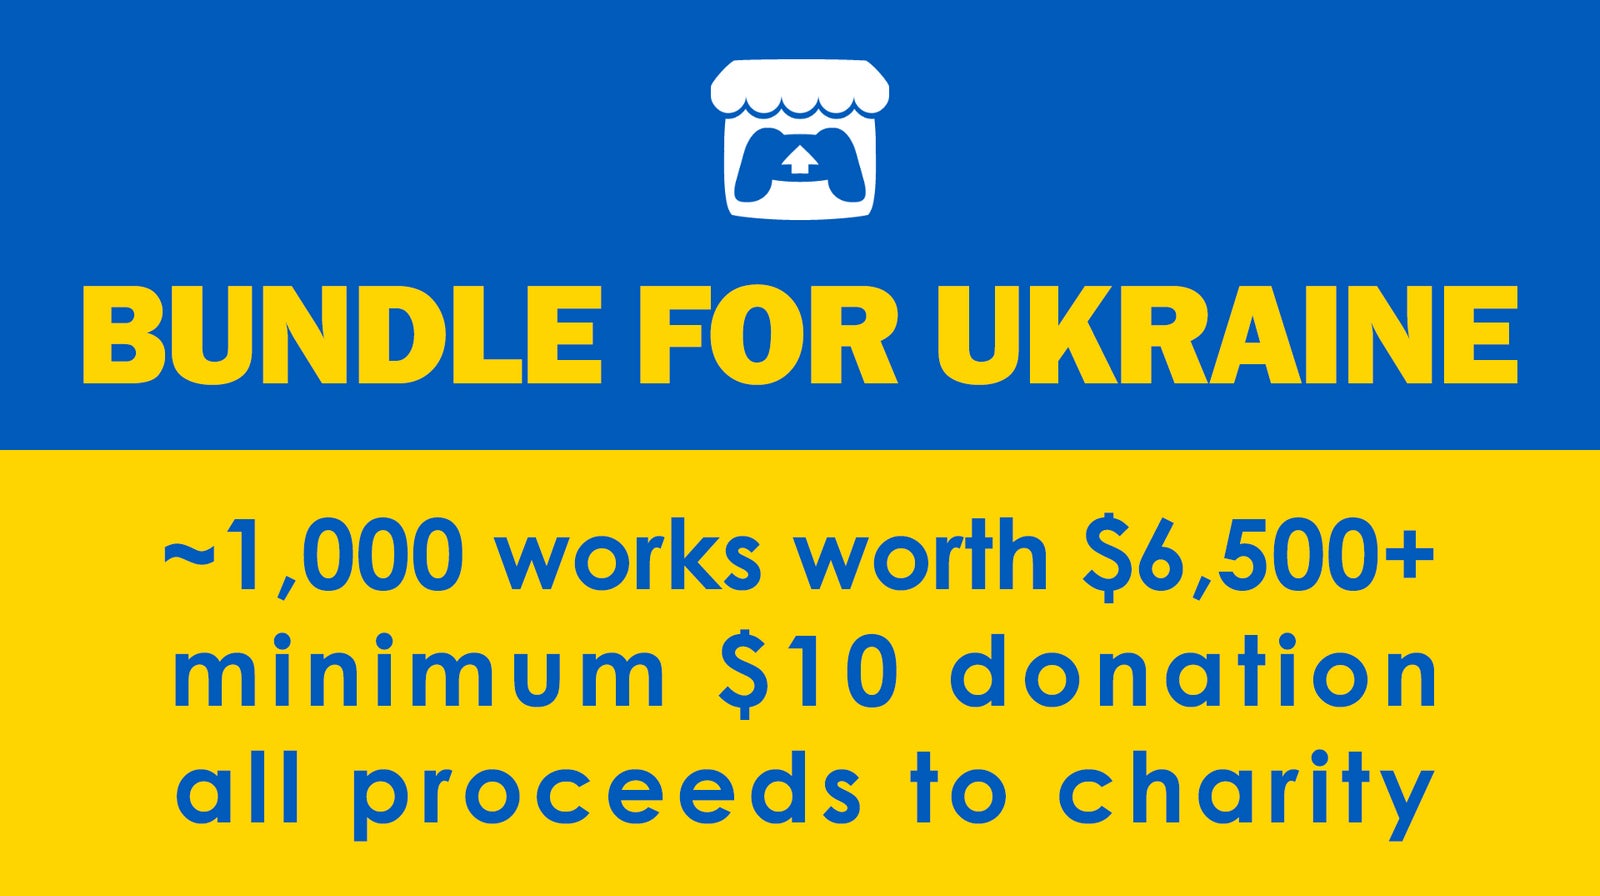 Bilder zu Noch 3 Tage: Zahlt 10 Dollar für fast 1.000 Spiele und unterstützt damit die Menschen in der Ukraine